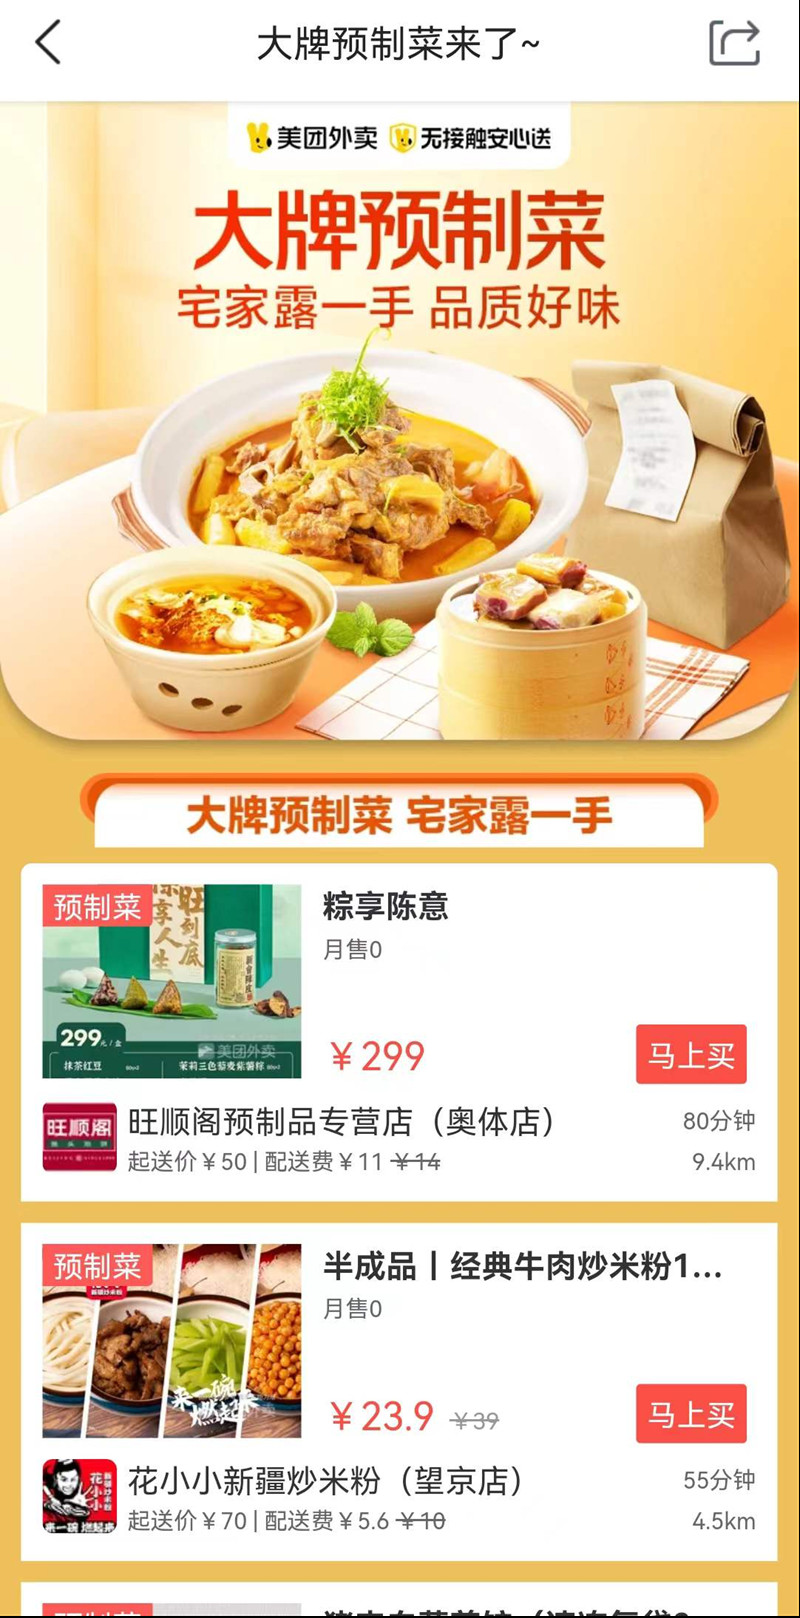 联合品牌商户在北京上线600余种预制菜品 美团外卖预制菜实现全城送